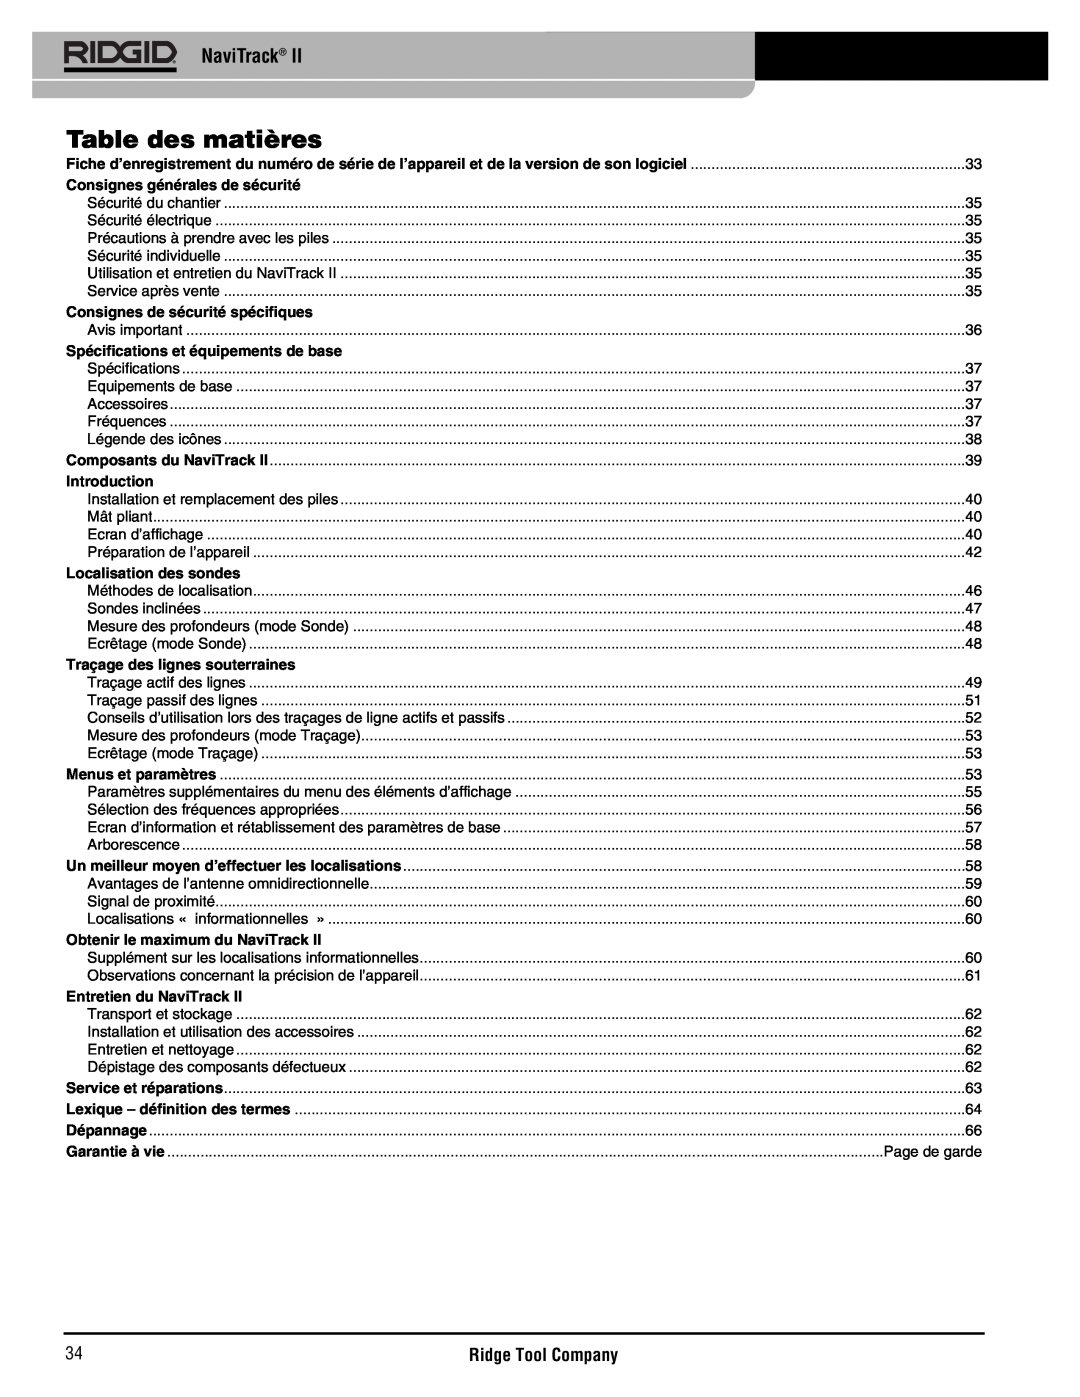 RIDGID Metal Detector manual Table des matières, NaviTrack, Page de garde 